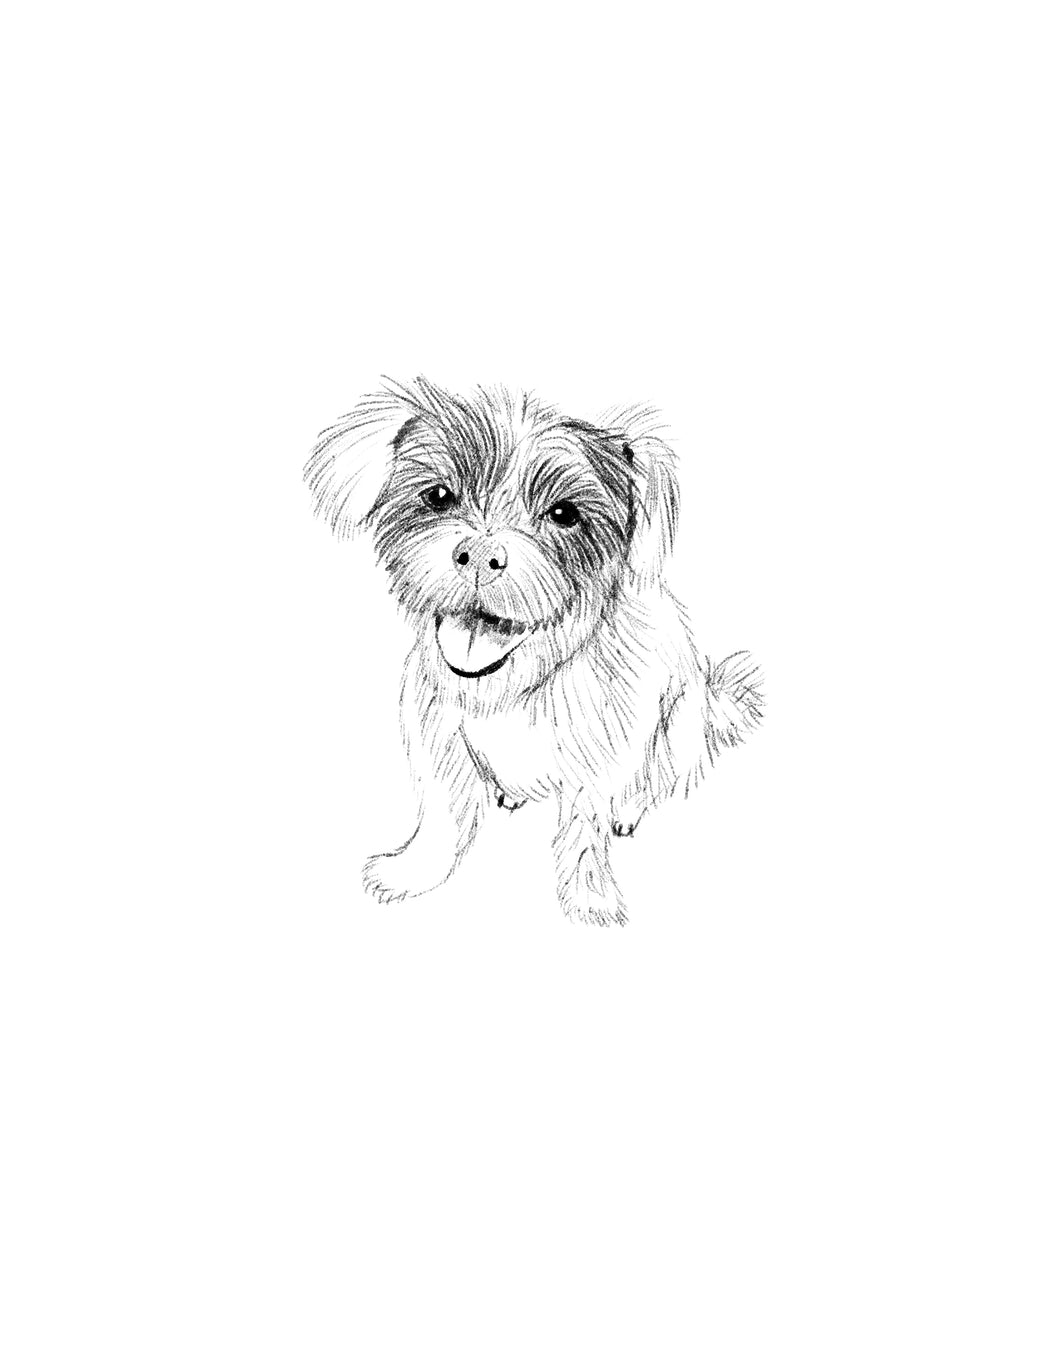 custom digital illustration pet artwork, Bruce the dog in black and white